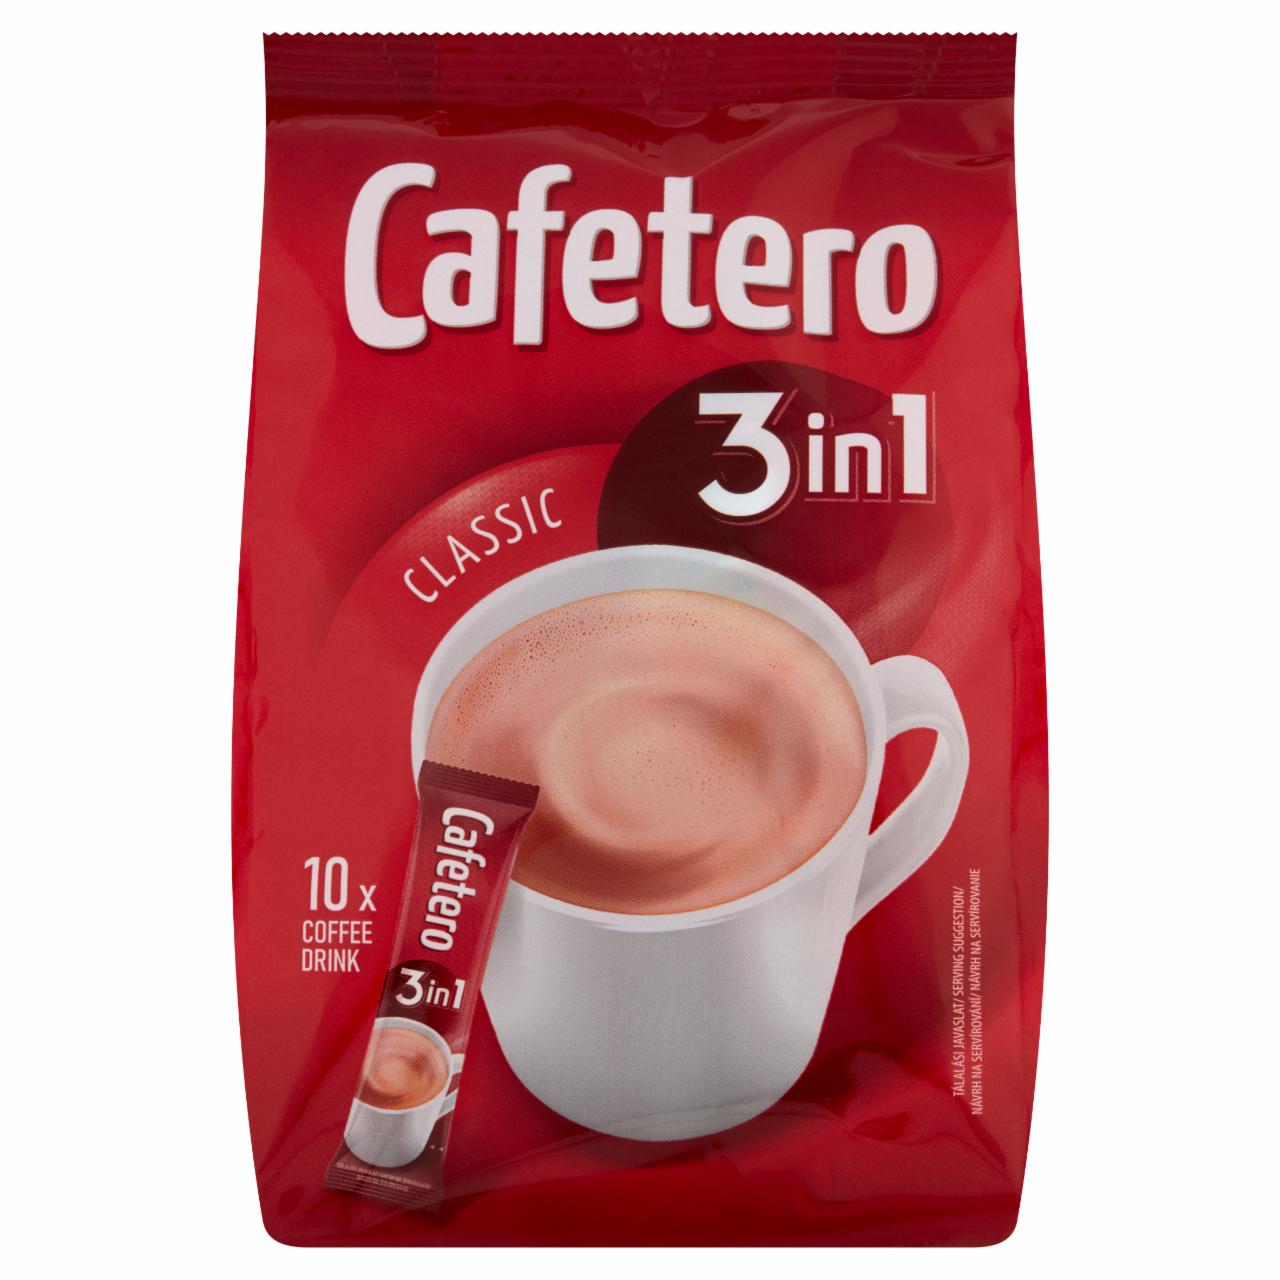 Képek - Cafetero Classic 3in1 azonnal oldódó kávéspecialitás 10 x 18 g (180 g)